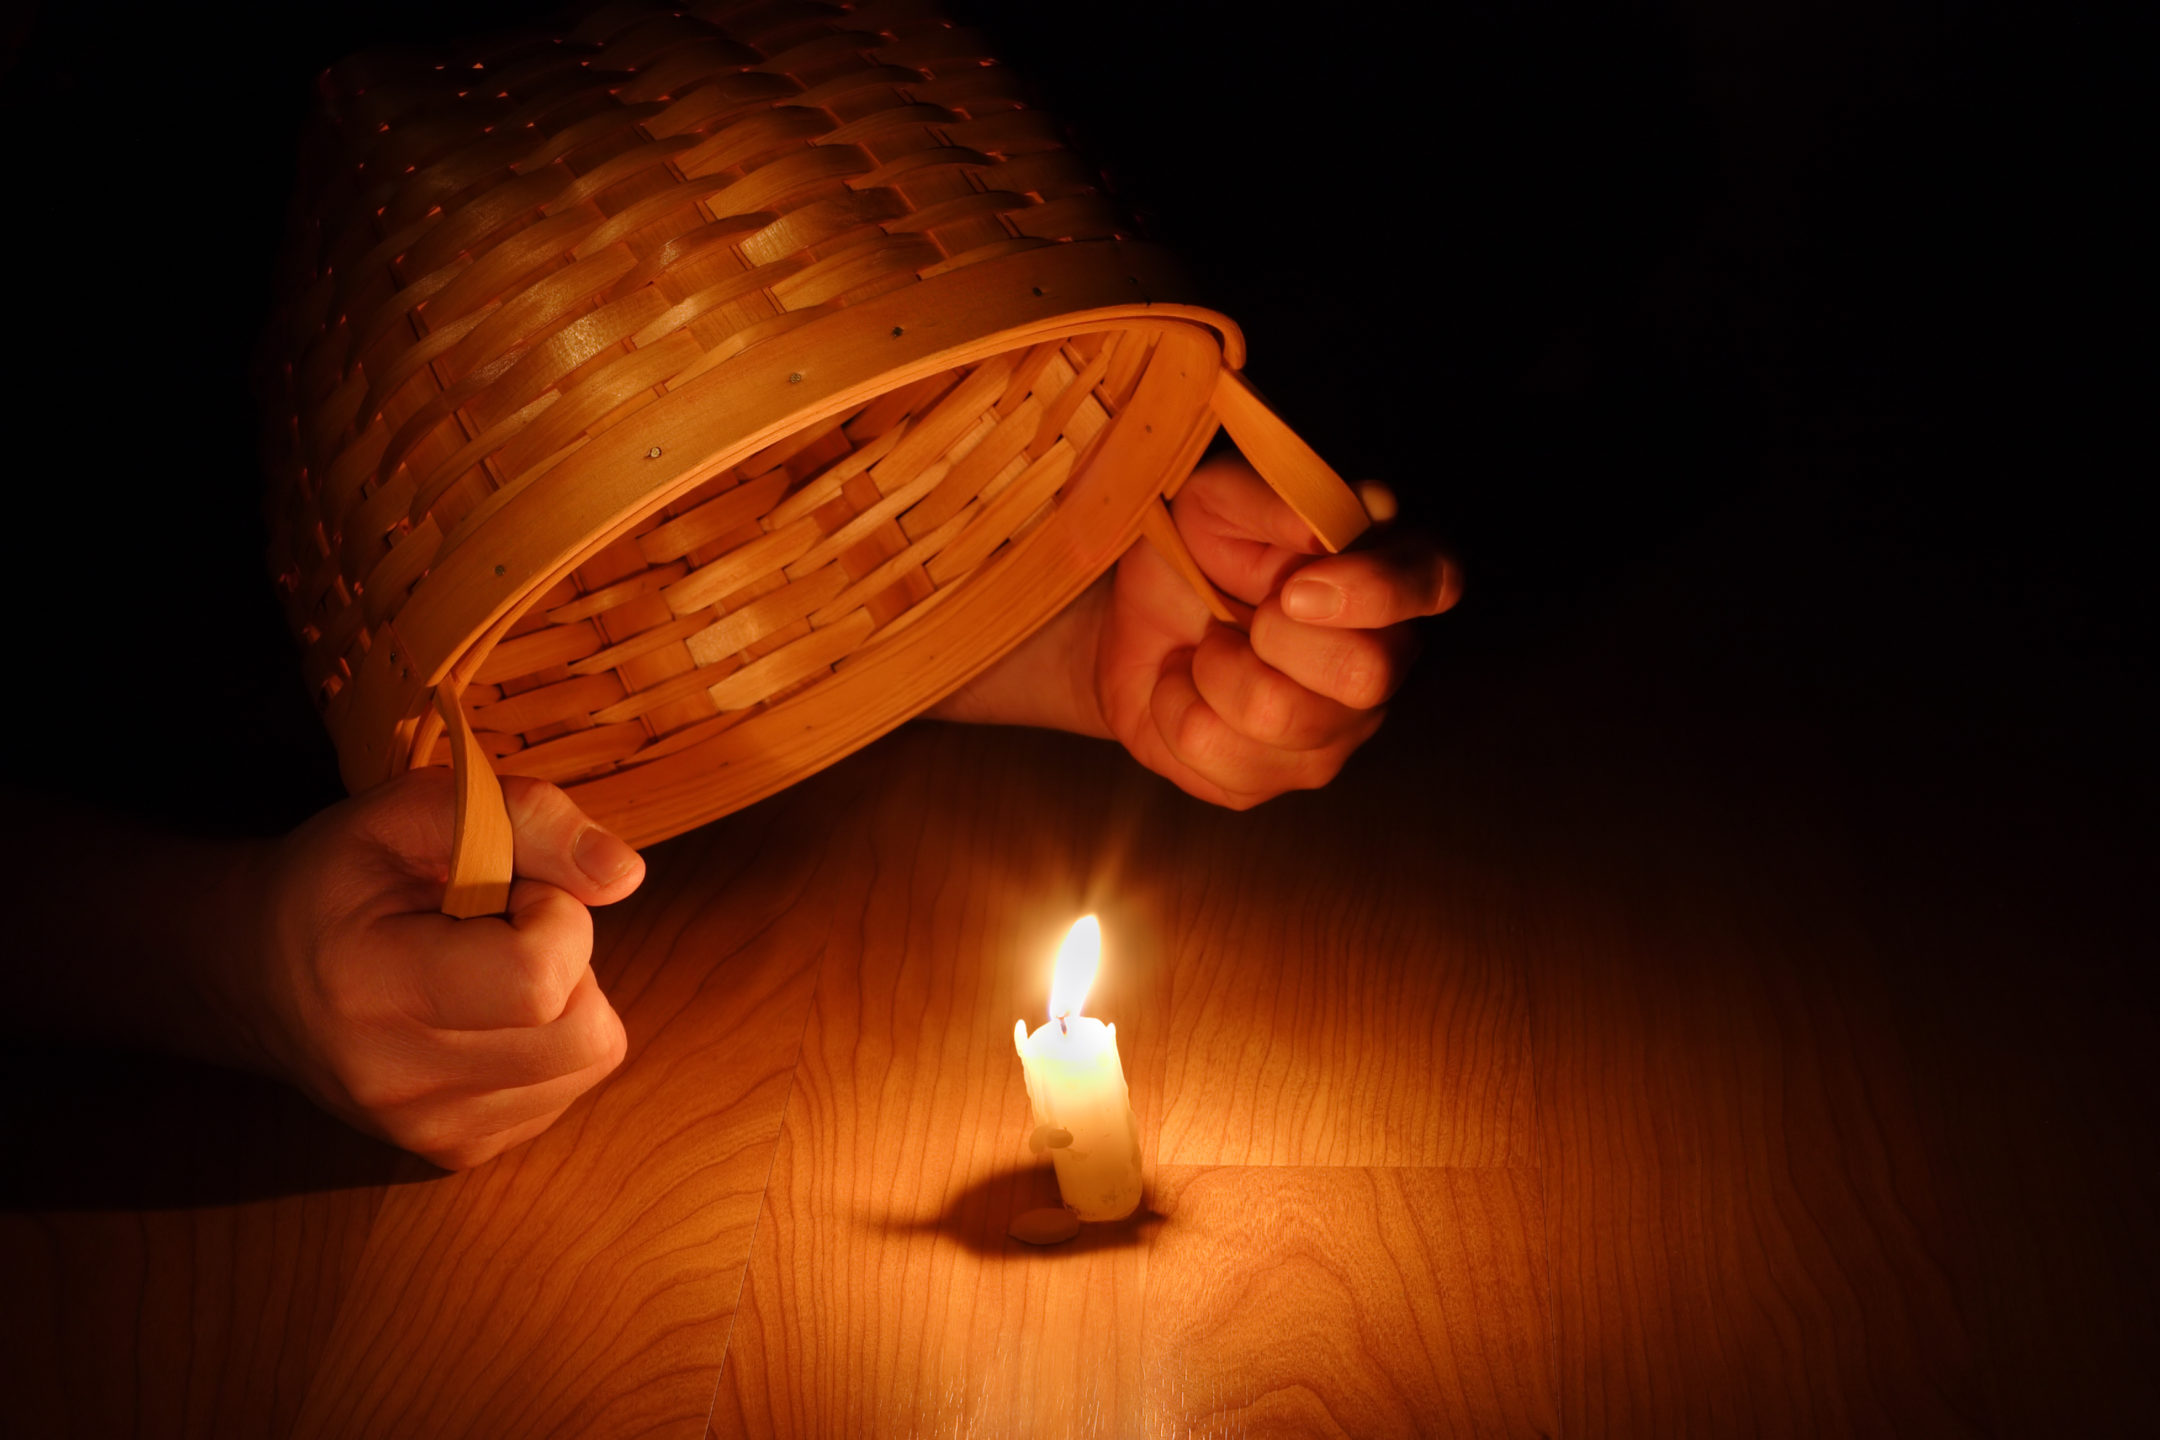 Hiding your light under a bushel basket